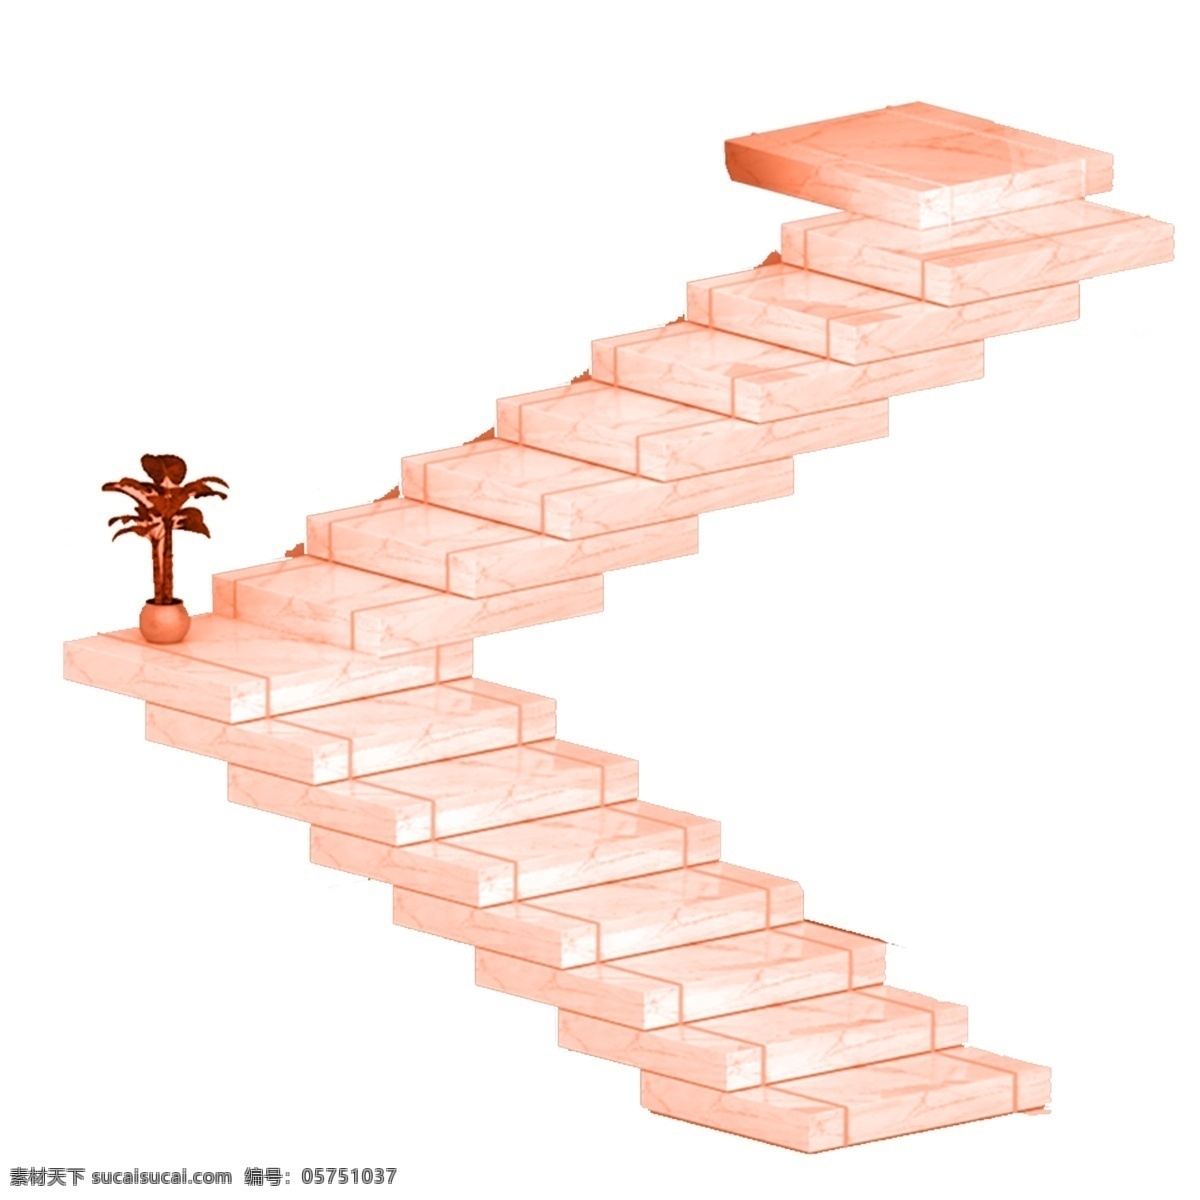 长长 楼梯 免 抠 图 梯子 卡通图案 卡通插画 建筑楼梯 植物盆栽 时尚盆景 植物 叶子 长长的楼梯 免抠图